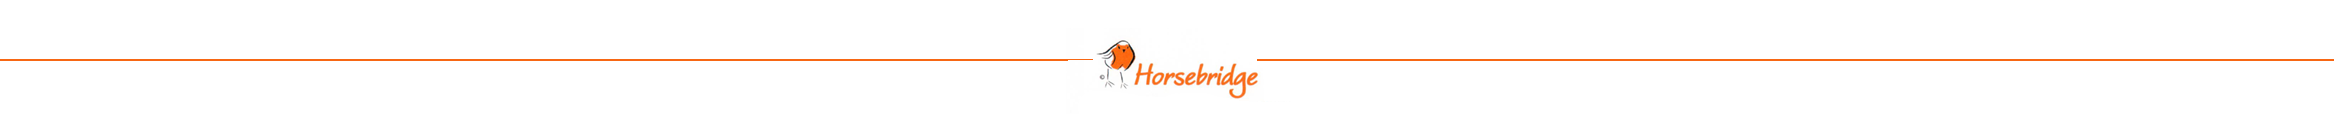 Horsebridge Vets logo